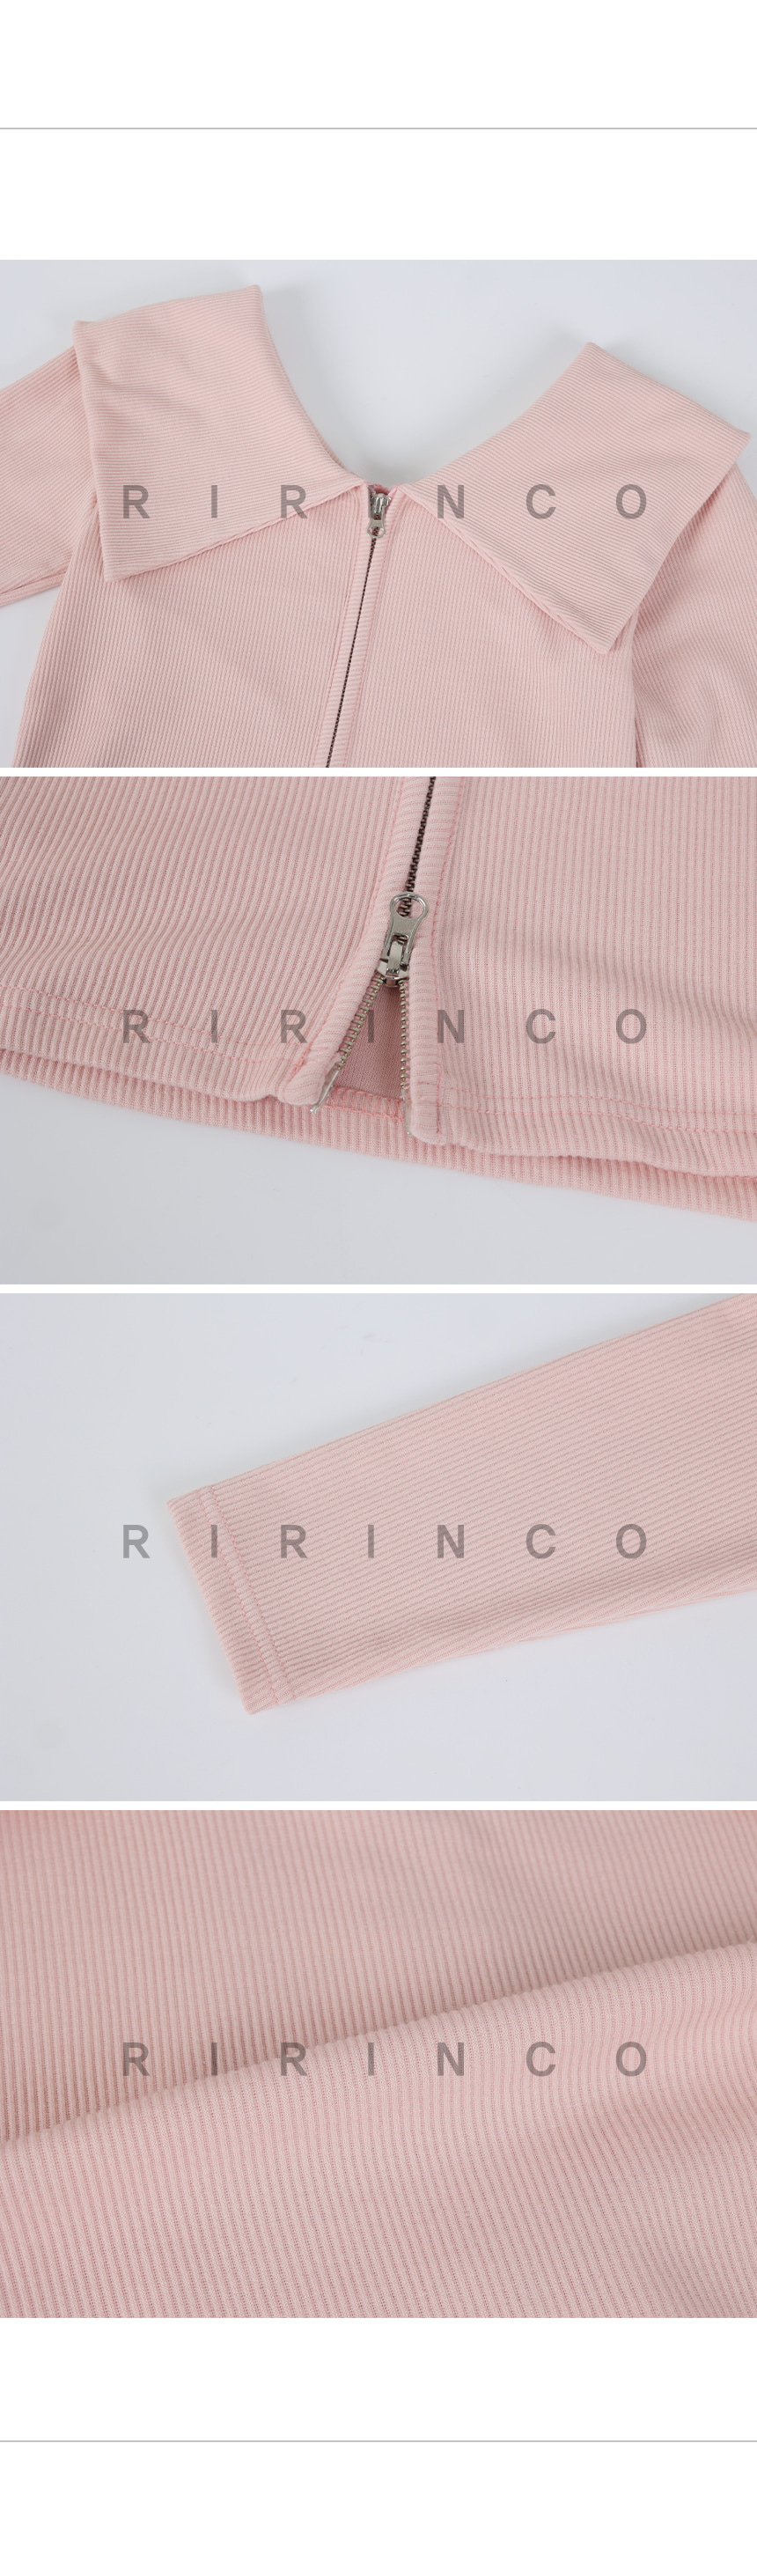 RIRINCO リブ編みビッグカラーオフショルダージップアップ